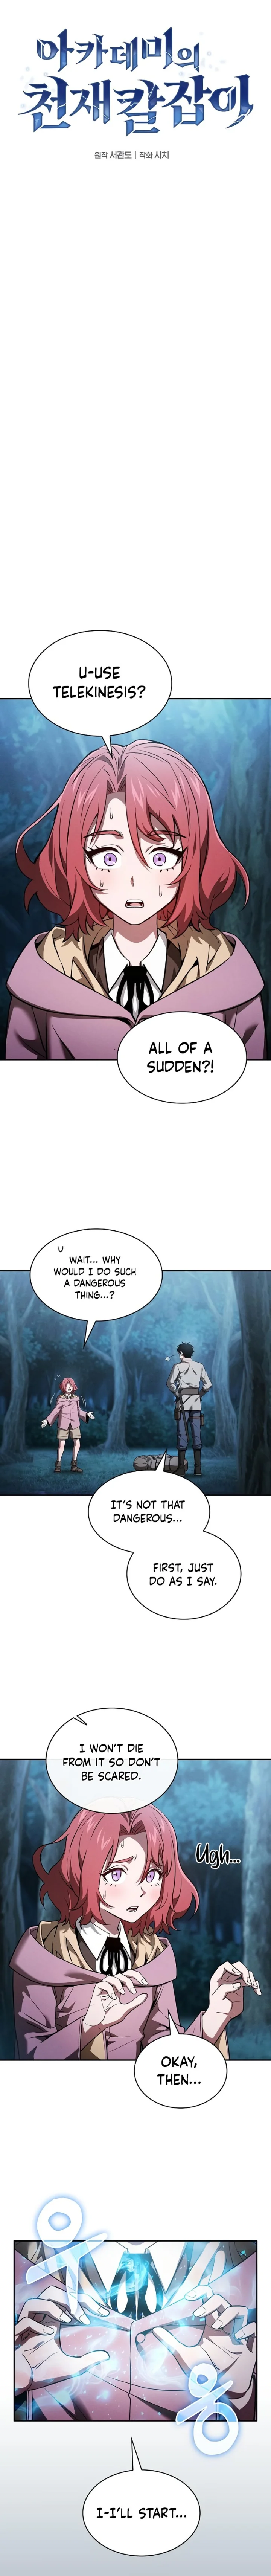 Academy’s Genius Swordsman - Chapter 5 Page 3